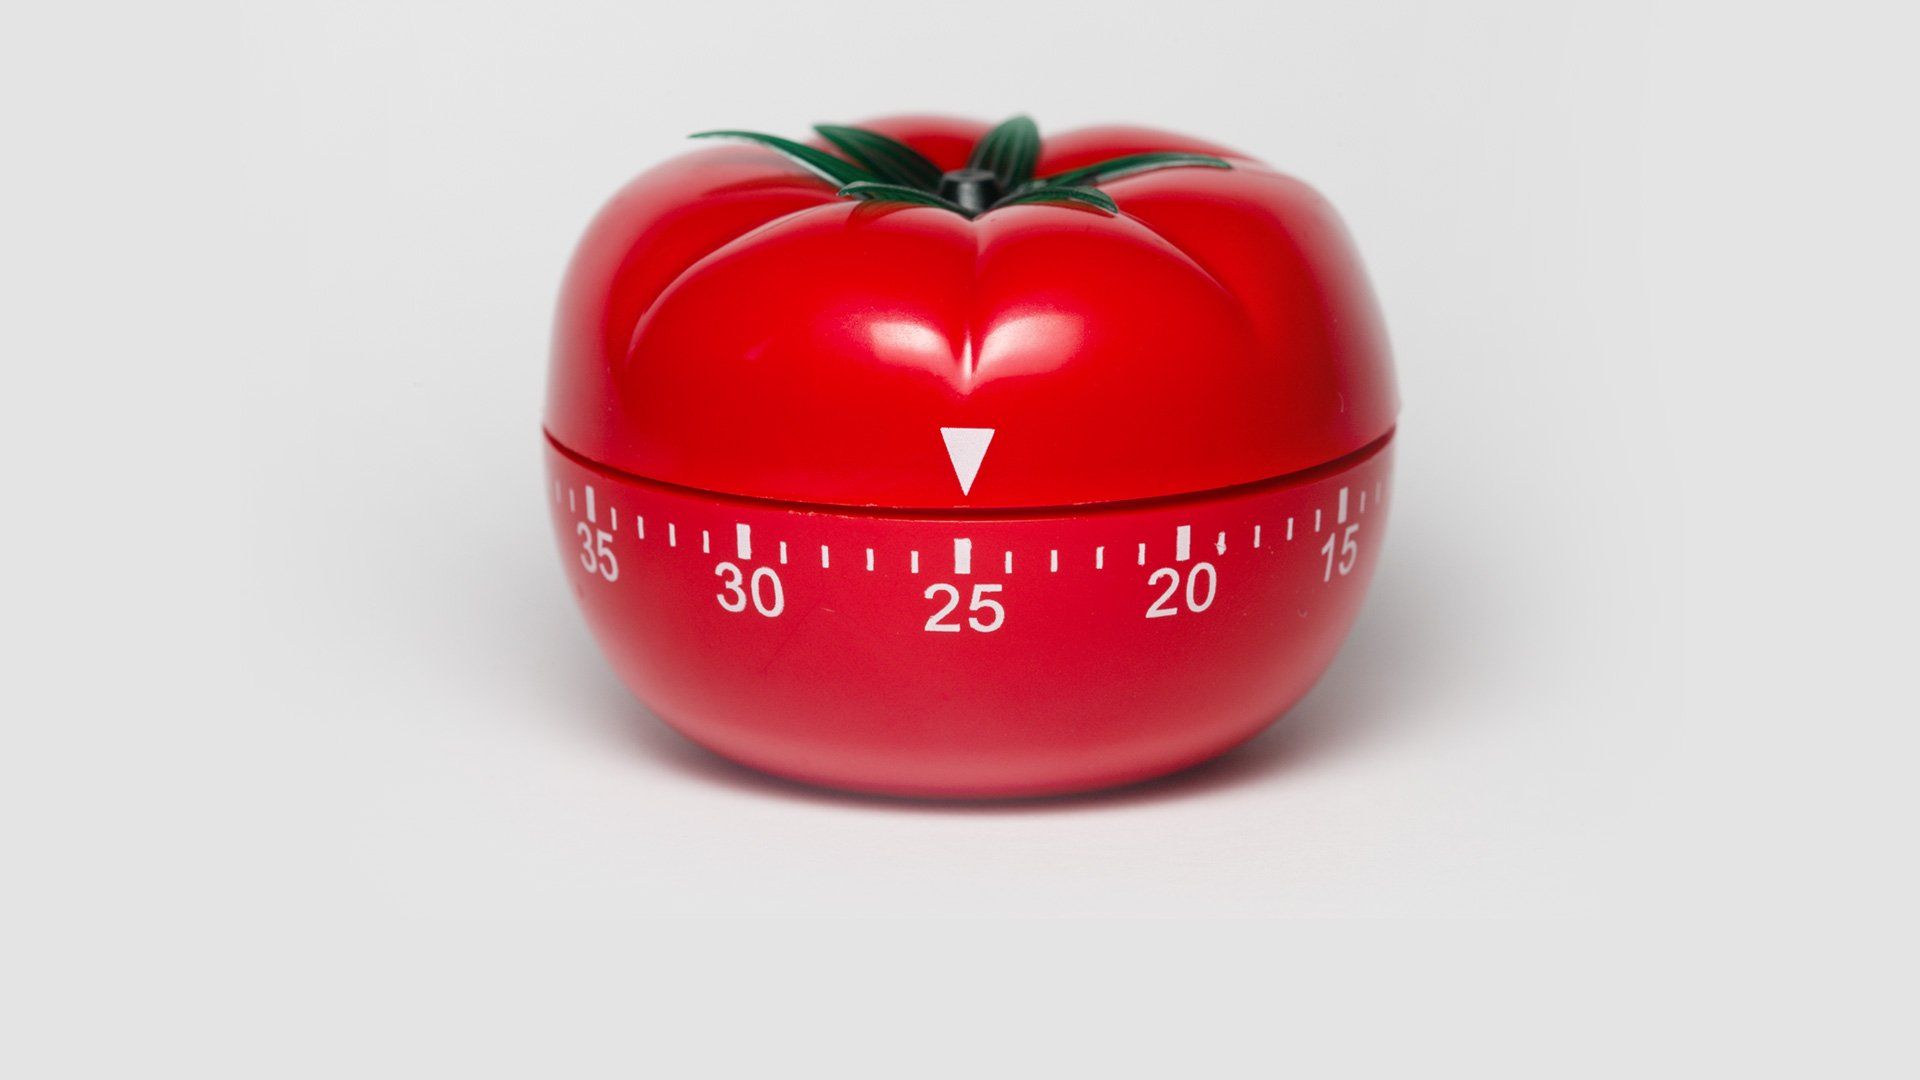 pomodoro timer focus